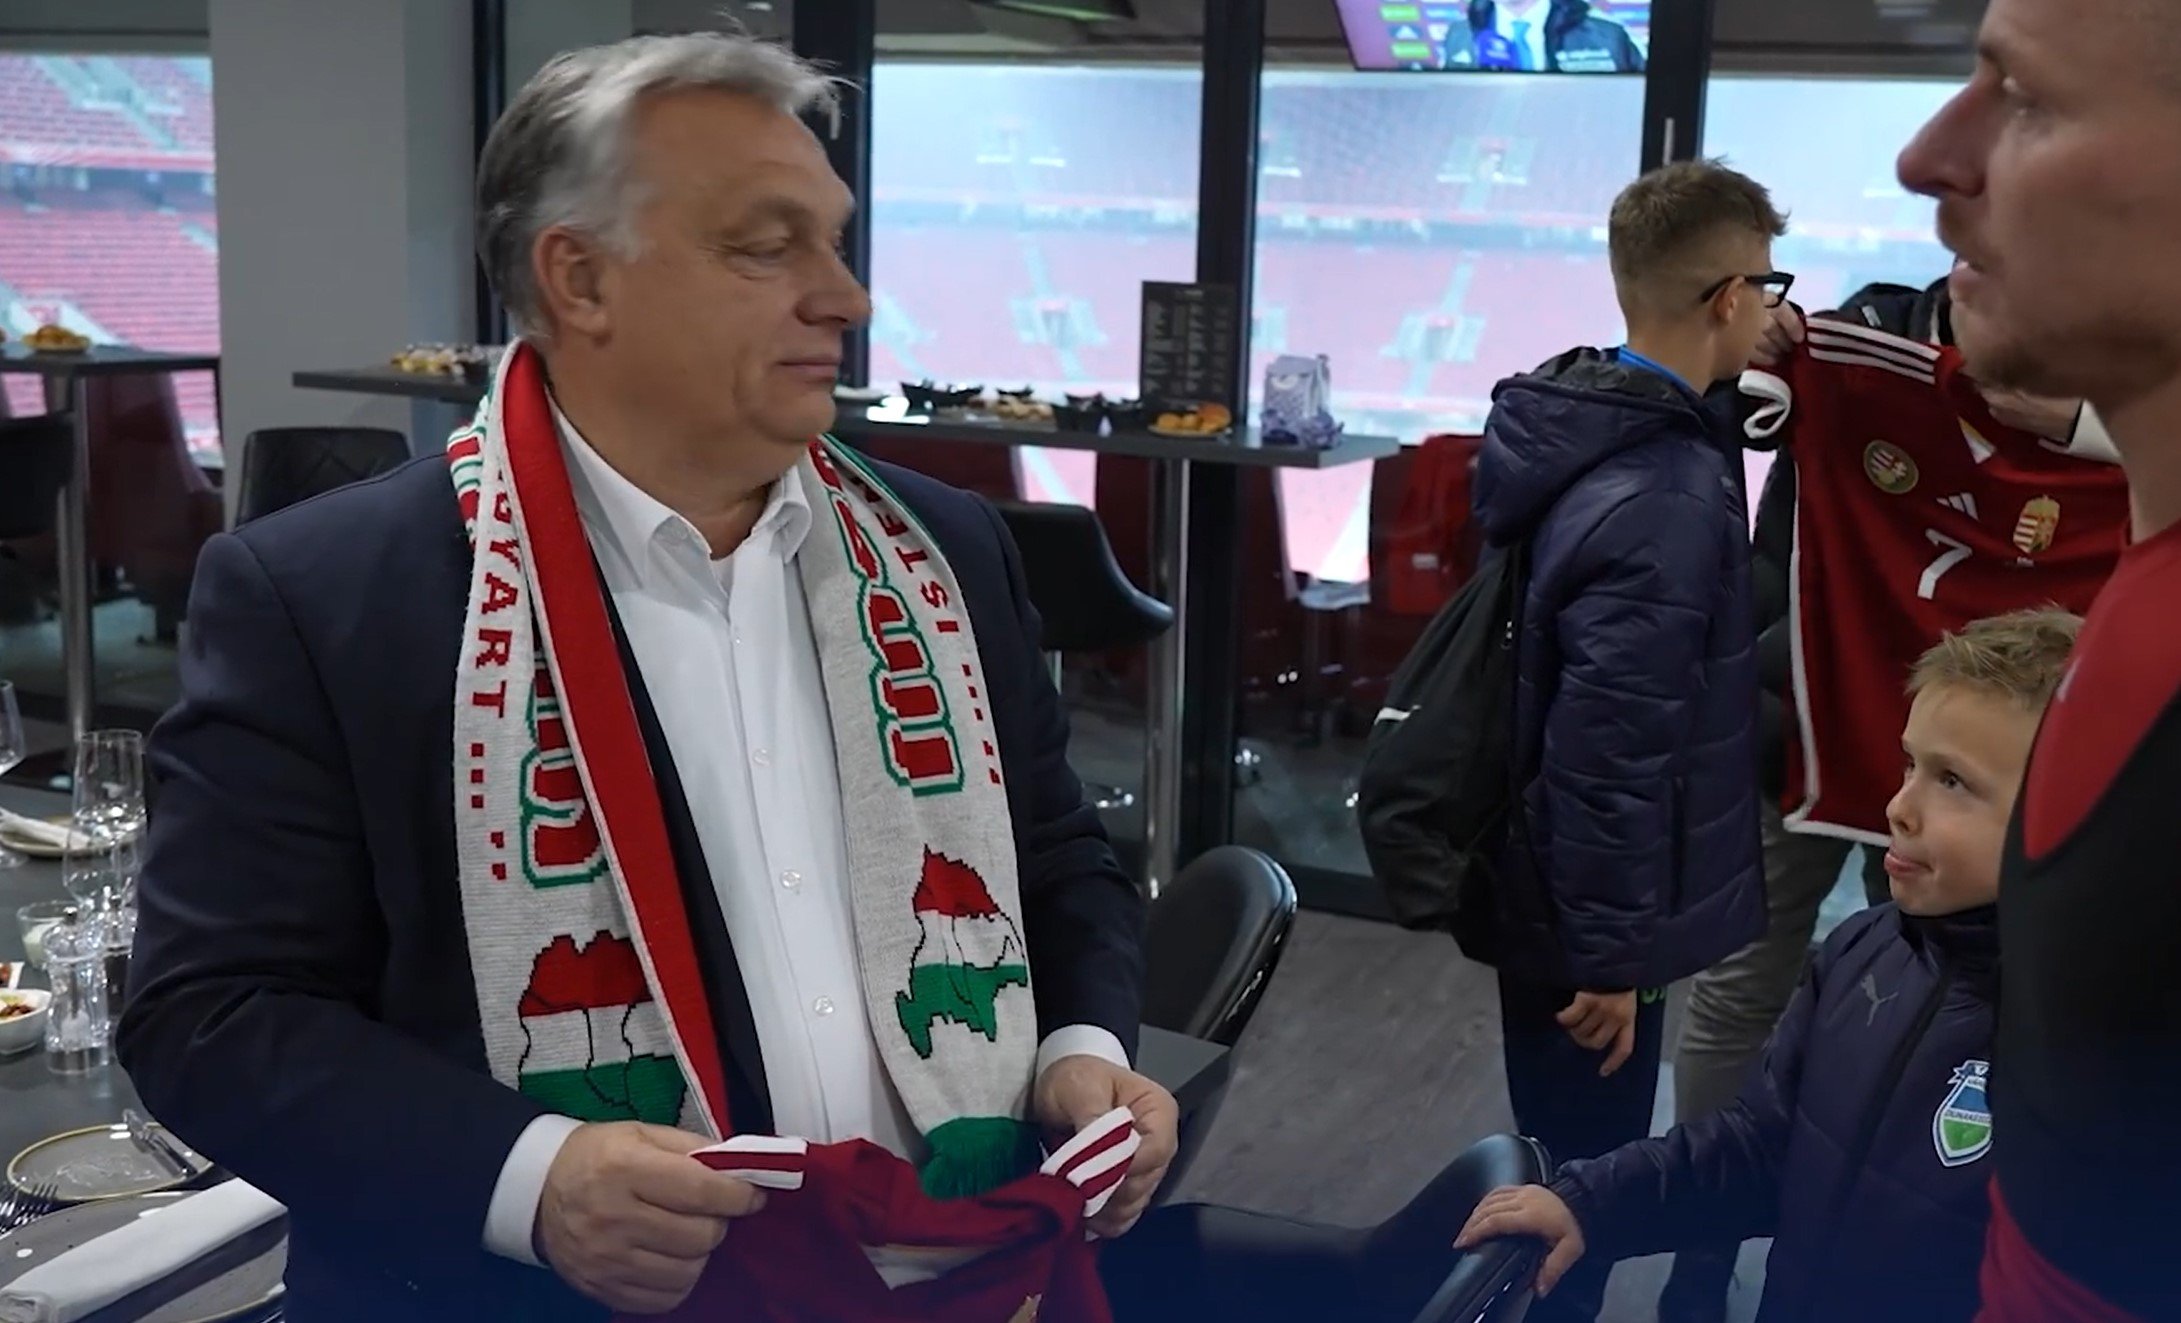  Rămas fără bani, guvernul Orban începe să taie din fondurile pentru sport. Visa Ungaria putere regională